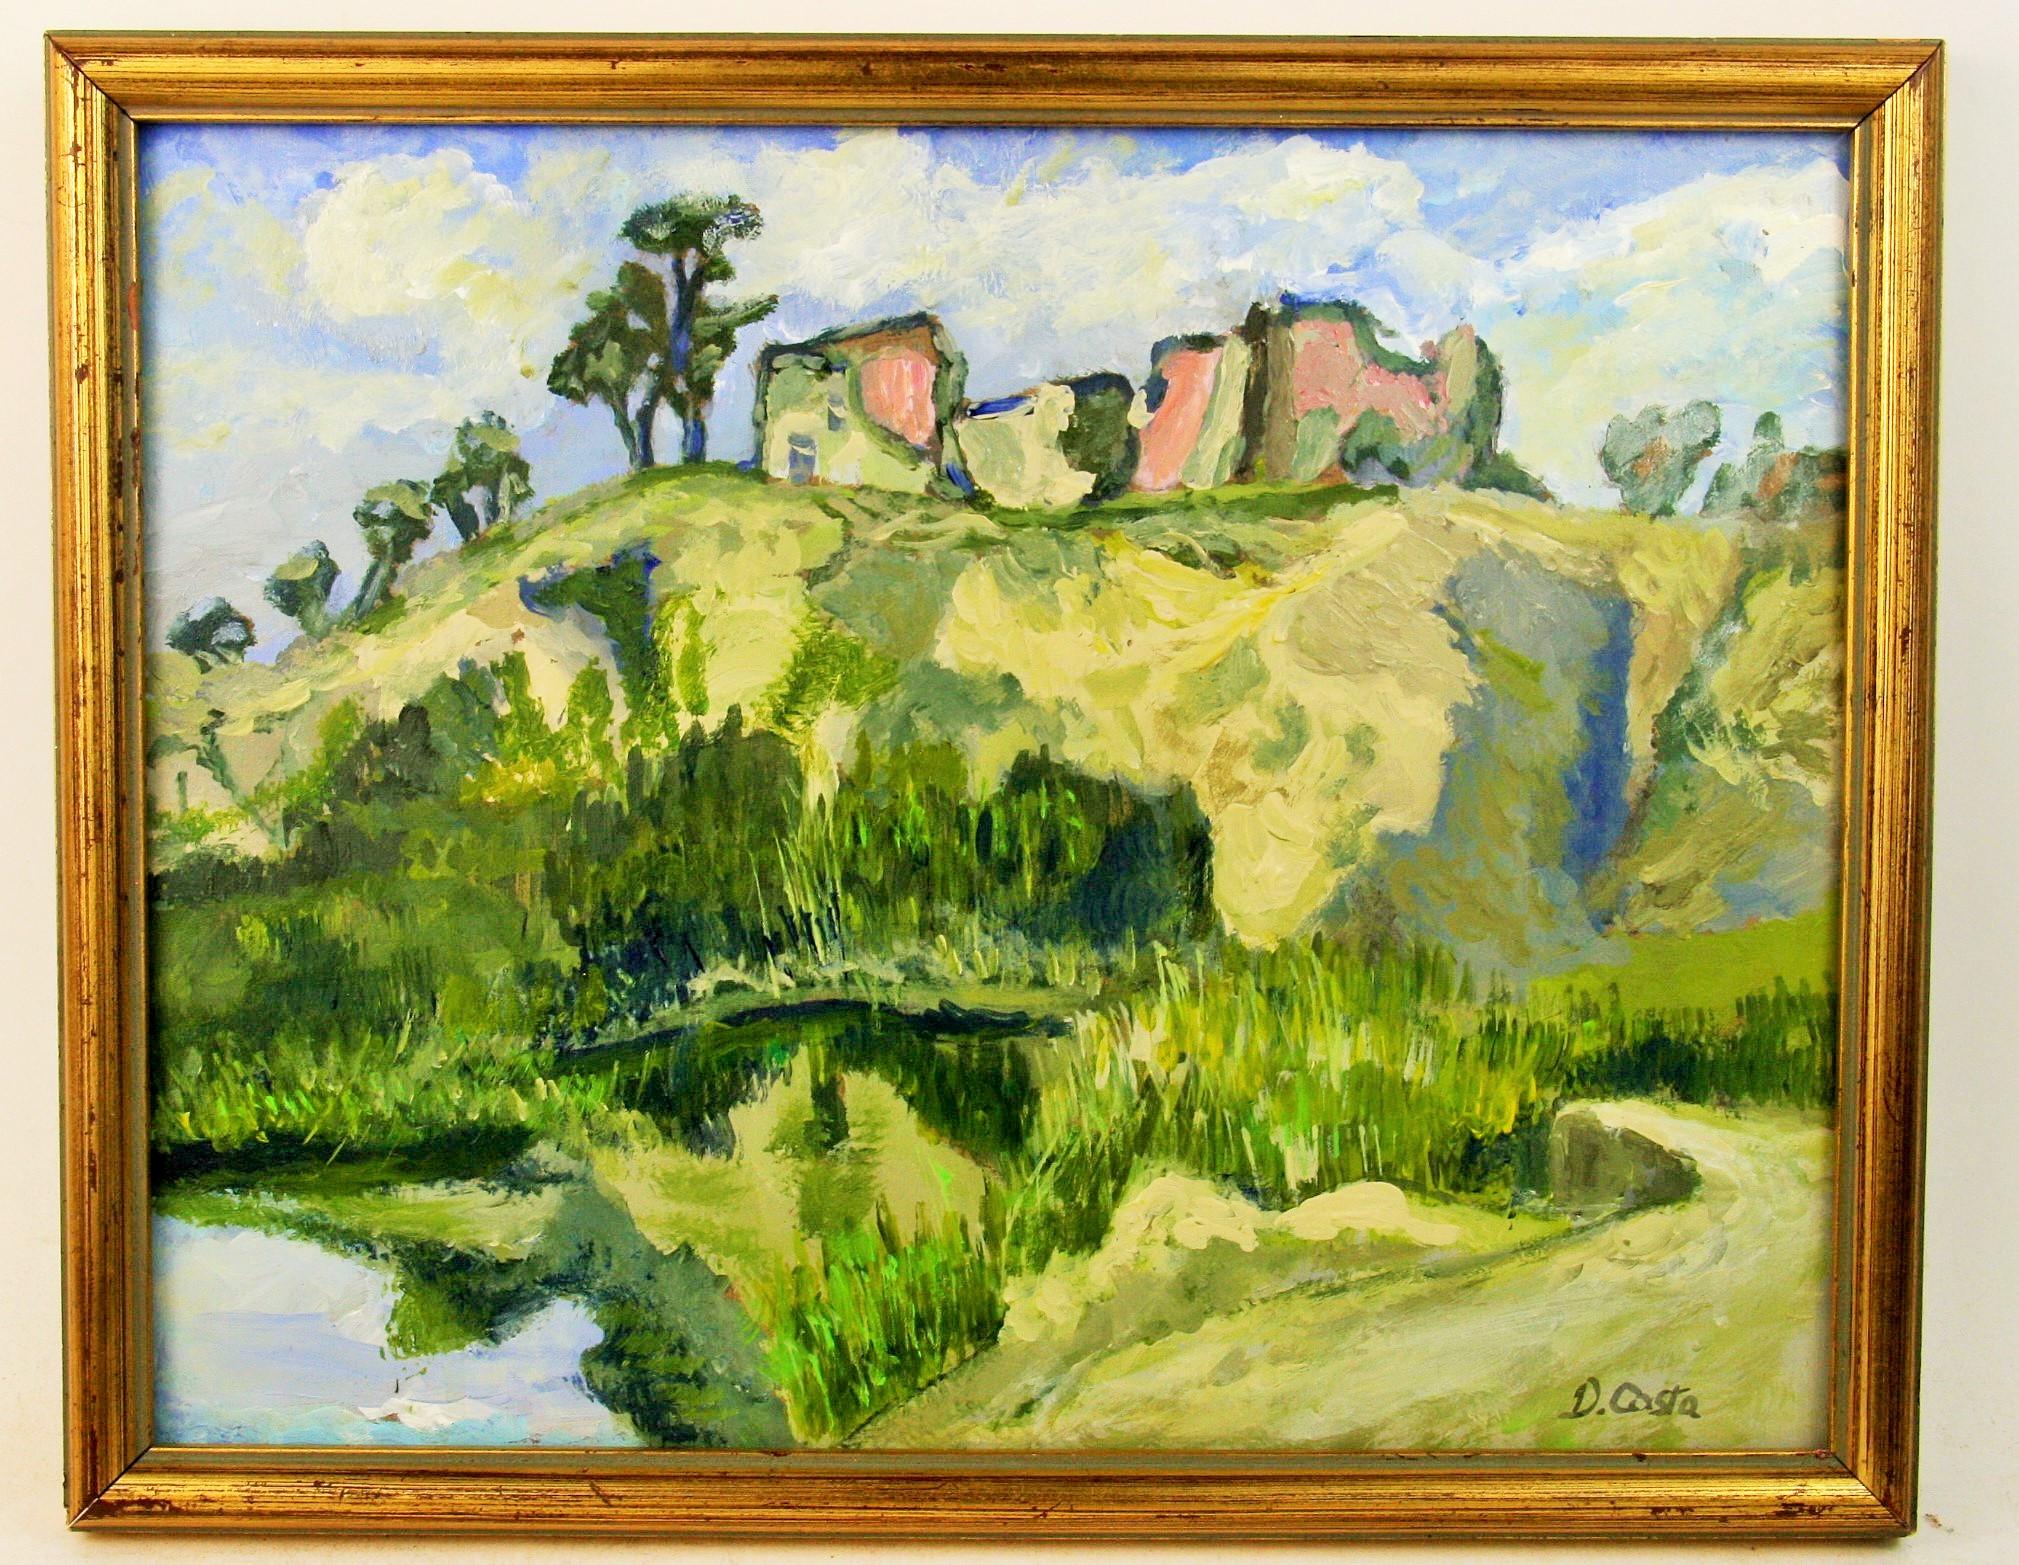 Landscape Painting D.Costa - Paysage impressionniste français d'un village aandoné 1950